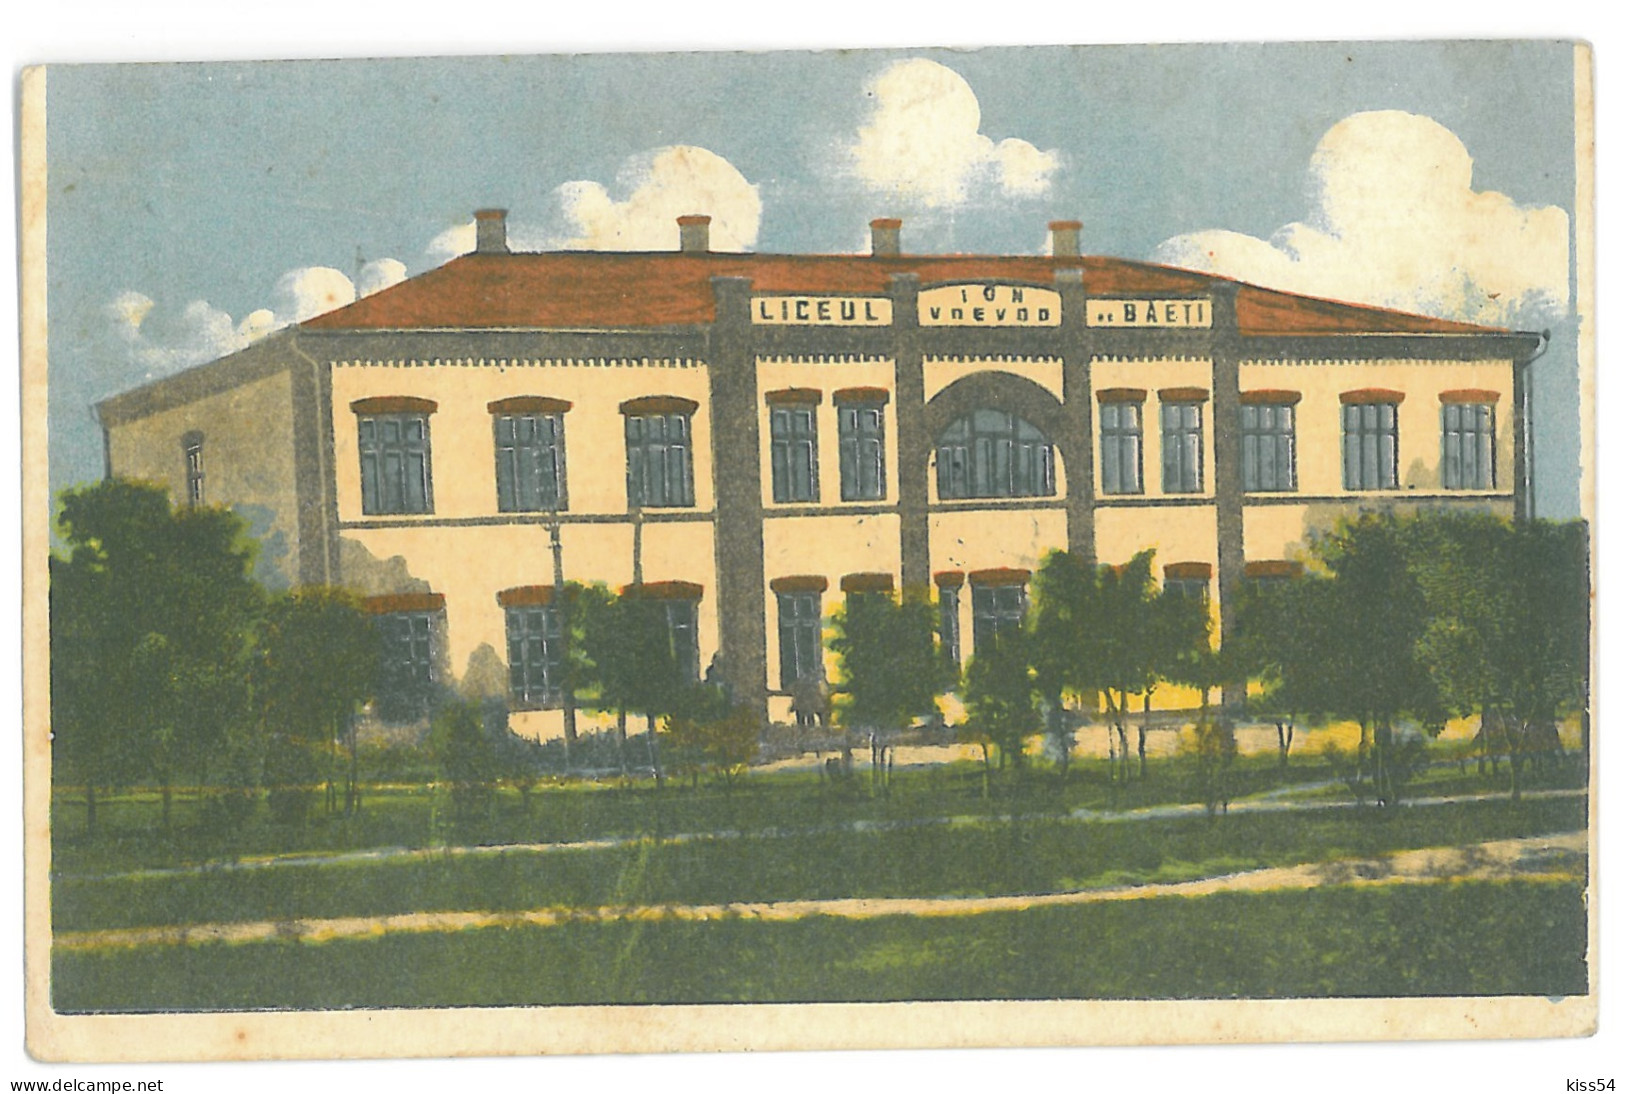 MOL 4 - 13918 KAHUL, Bessarabia, Moldova, High School Ion Voievod - Old Postcard - Used - 1927 - Moldawien (Moldova)